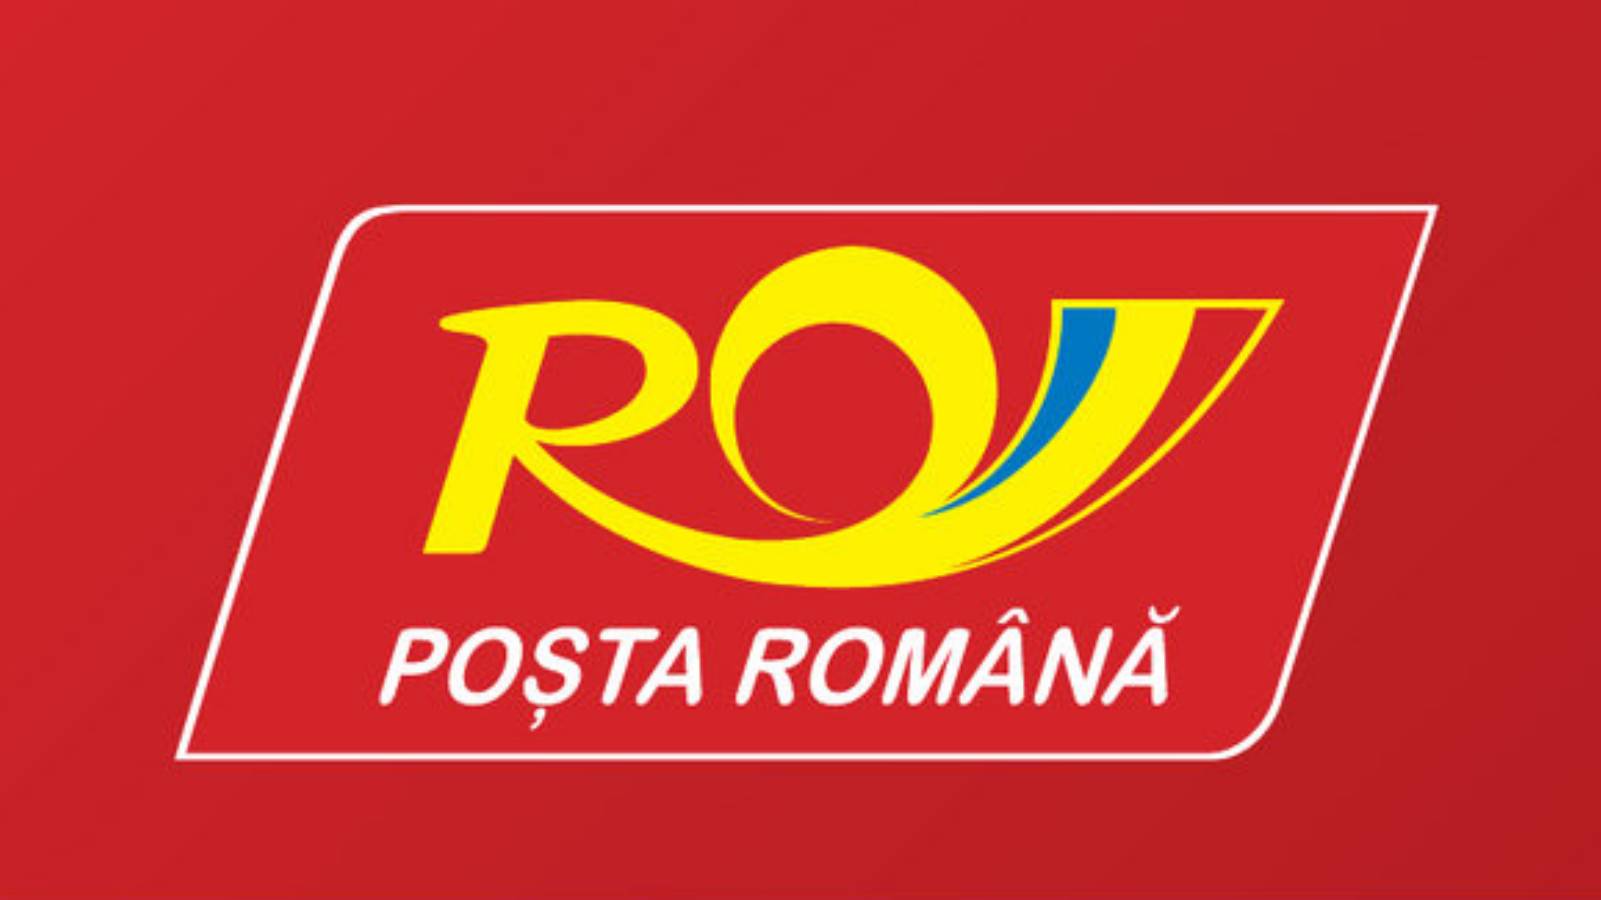 Posta Romana meddelande rumäner